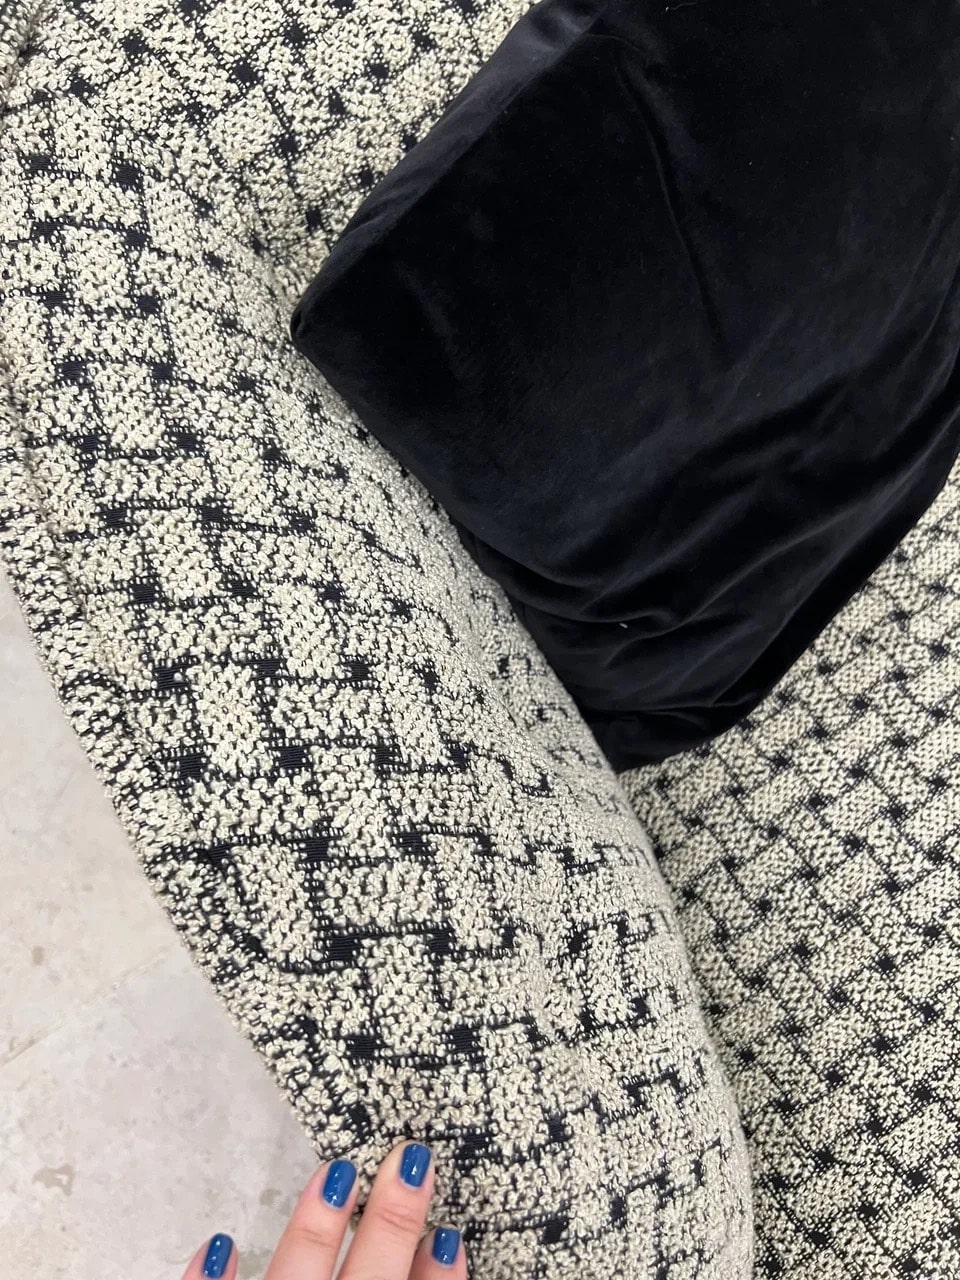 Текстиль с крупным принтом “плетенка”